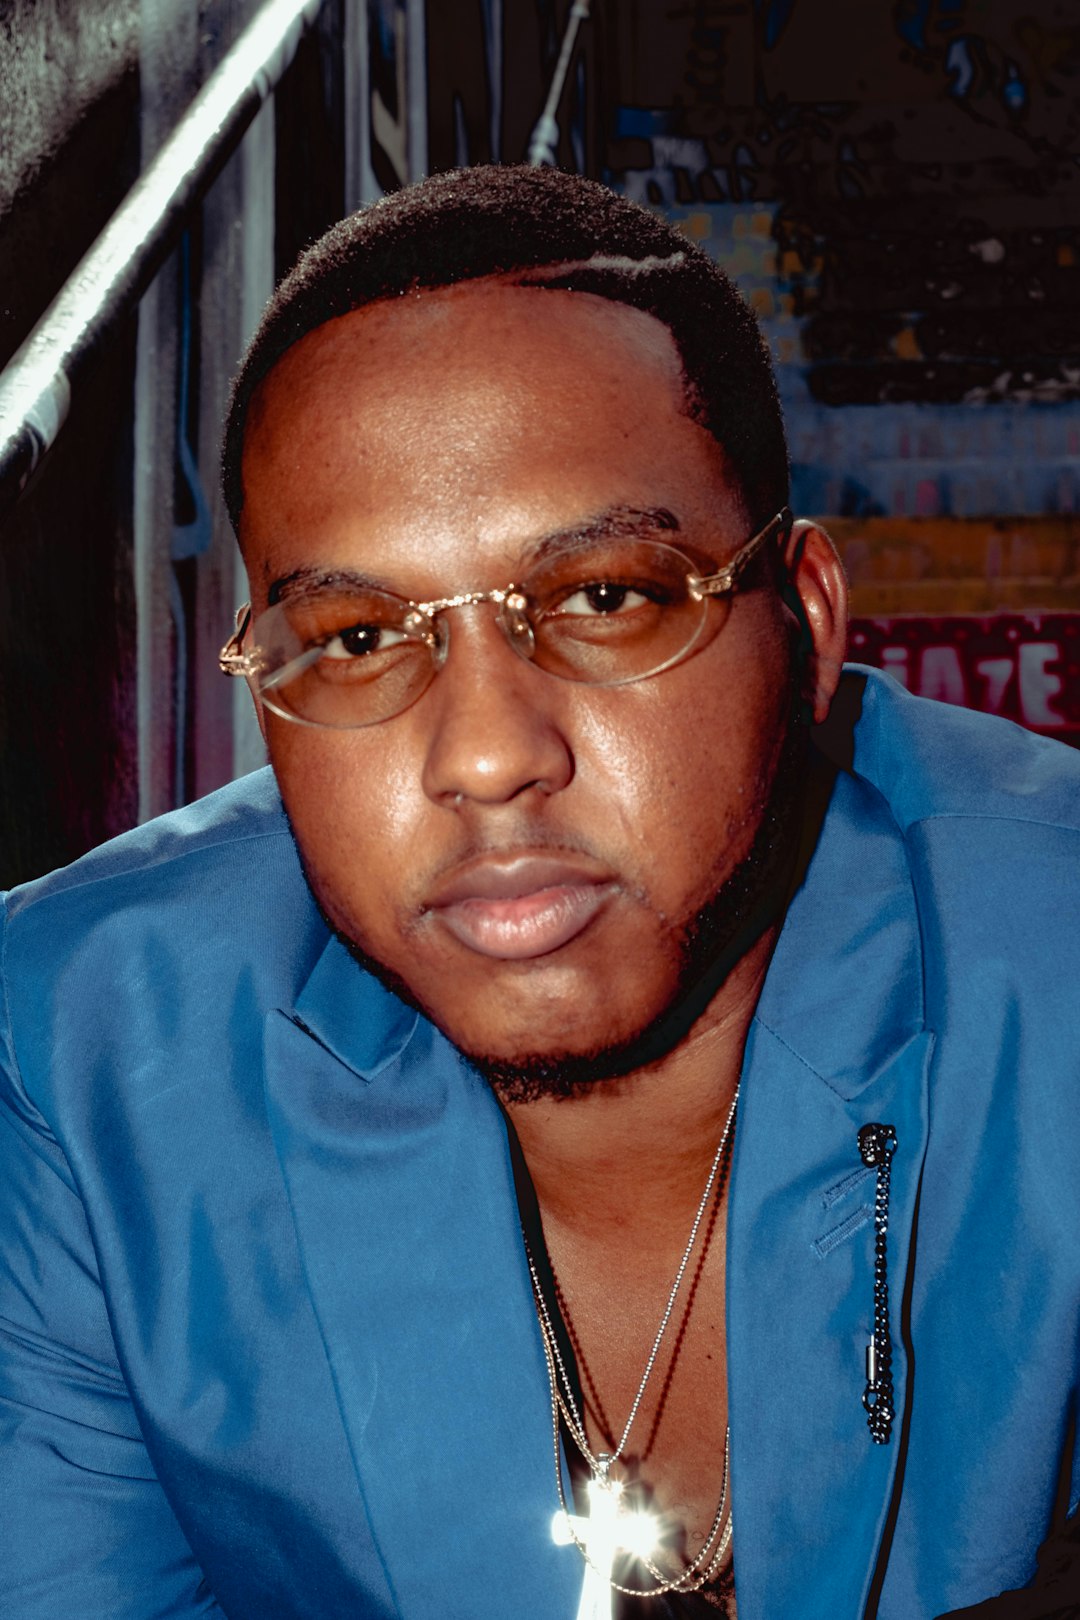 man in blue zip up jacket wearing eyeglasses